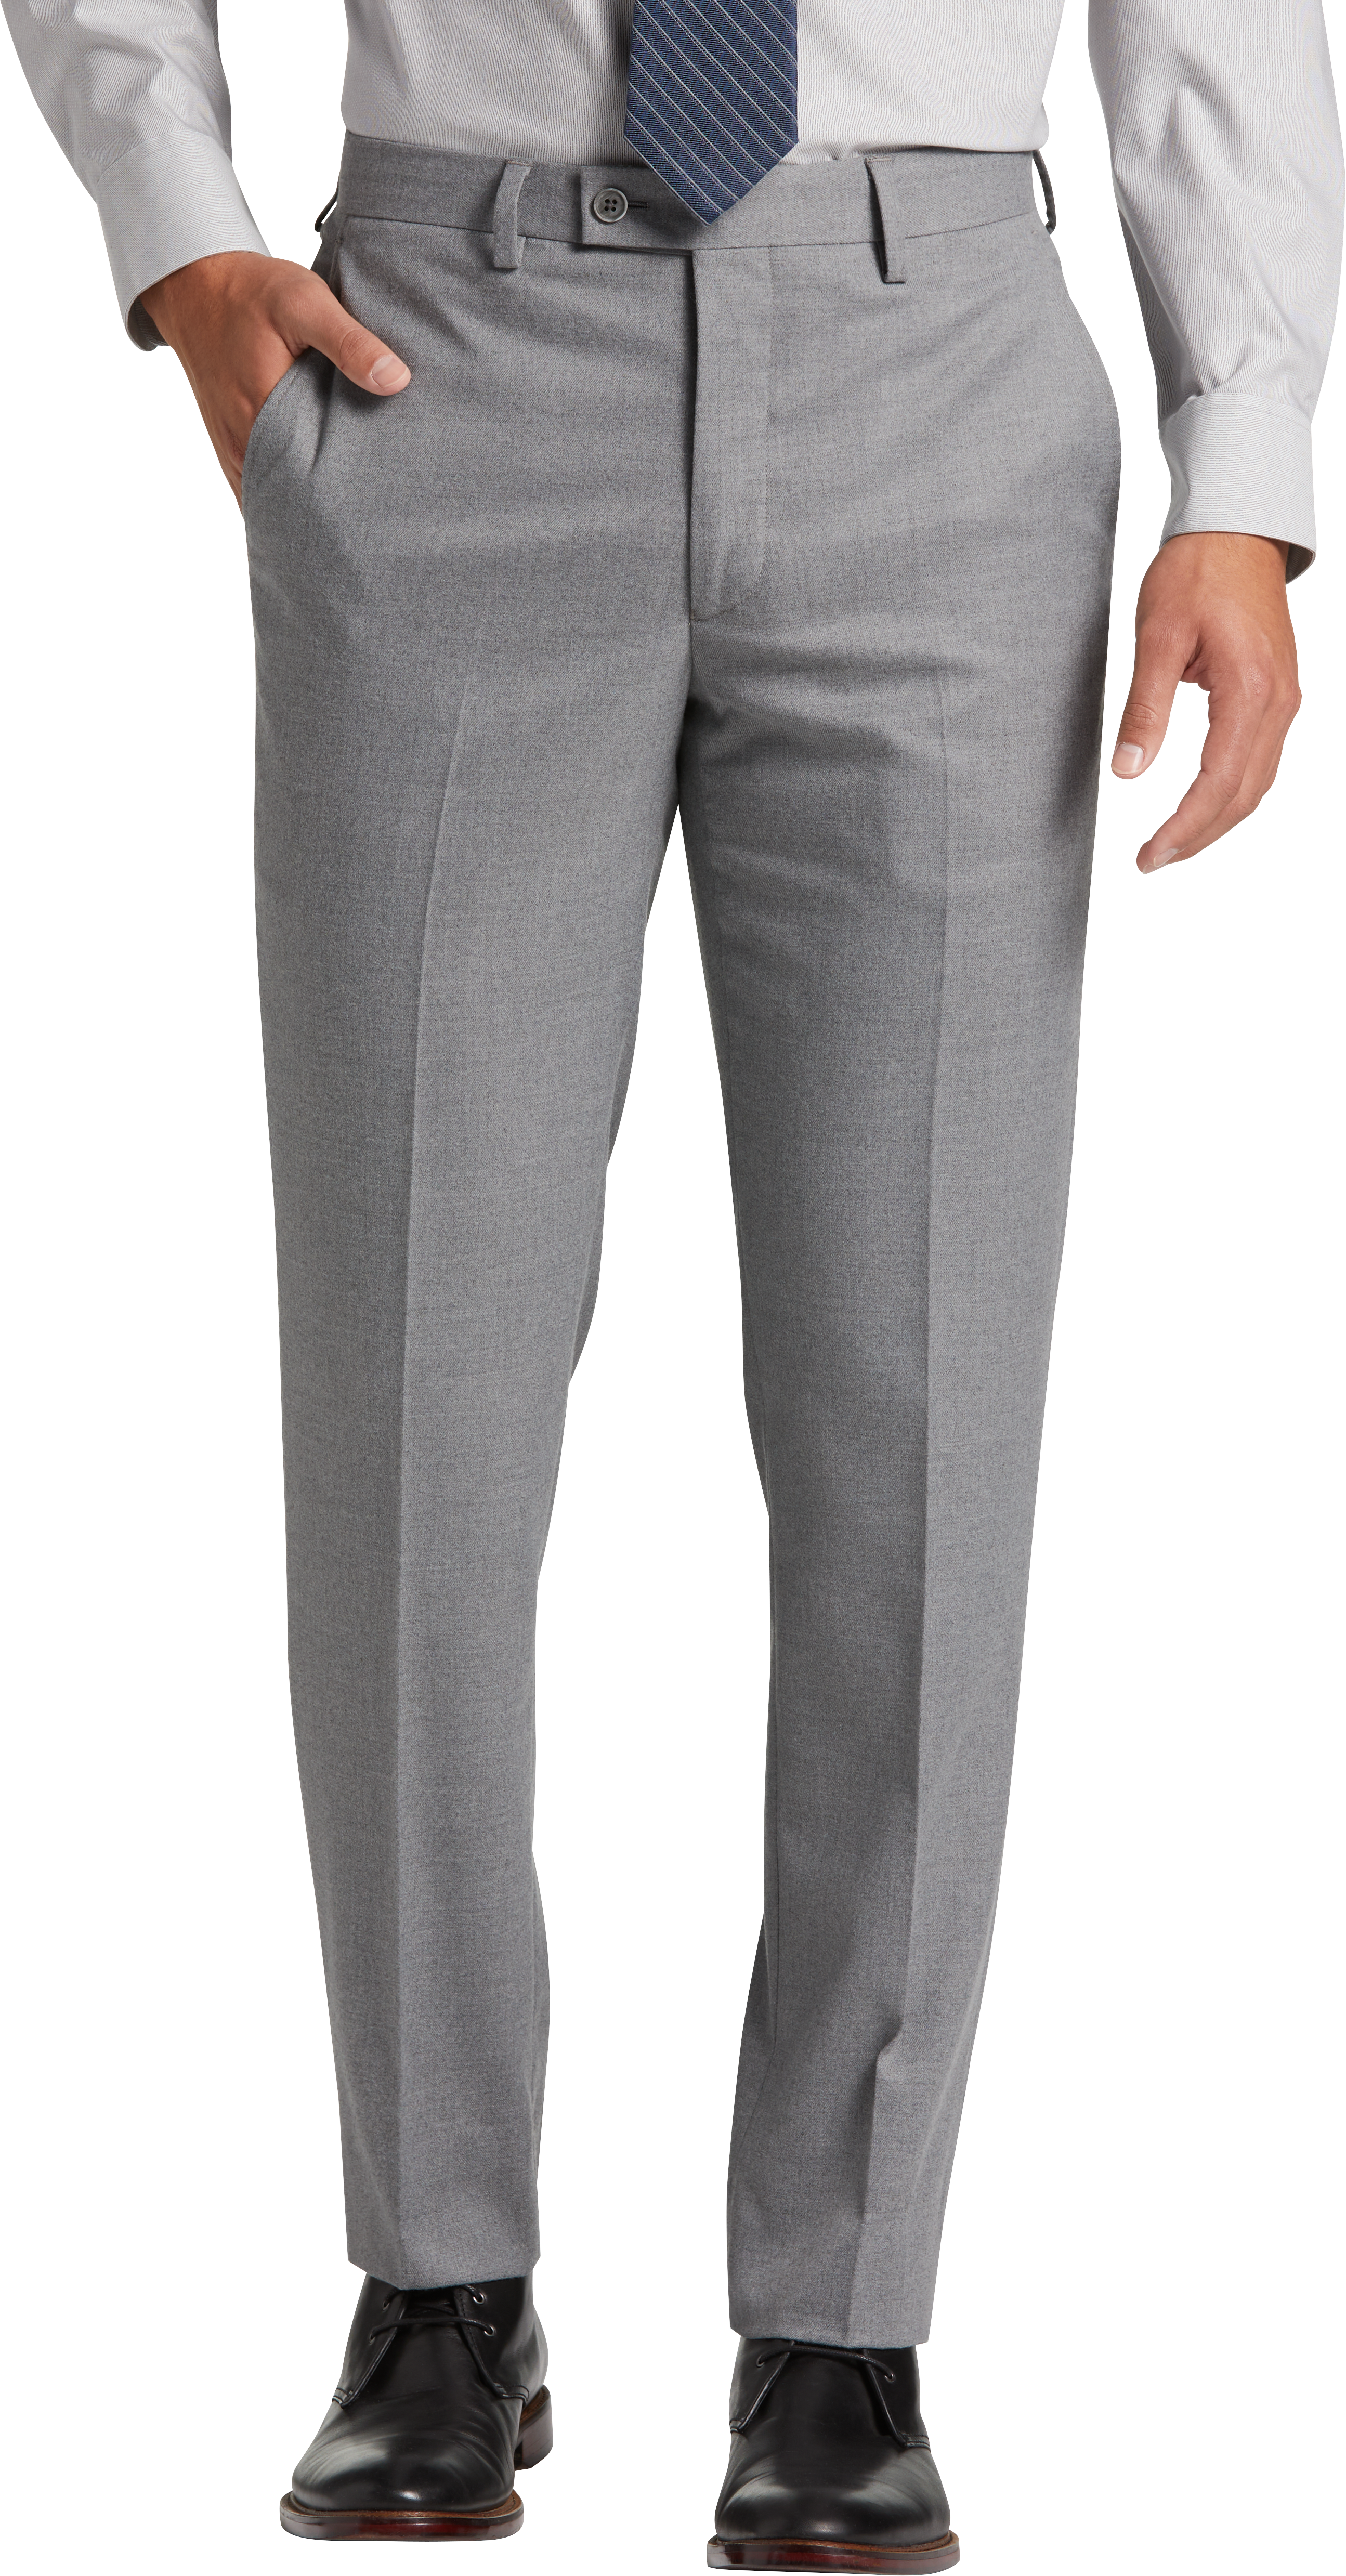 Egara Skinny Fit Suit Separates Pants, Light Gray - Men's Sale | Men's ...